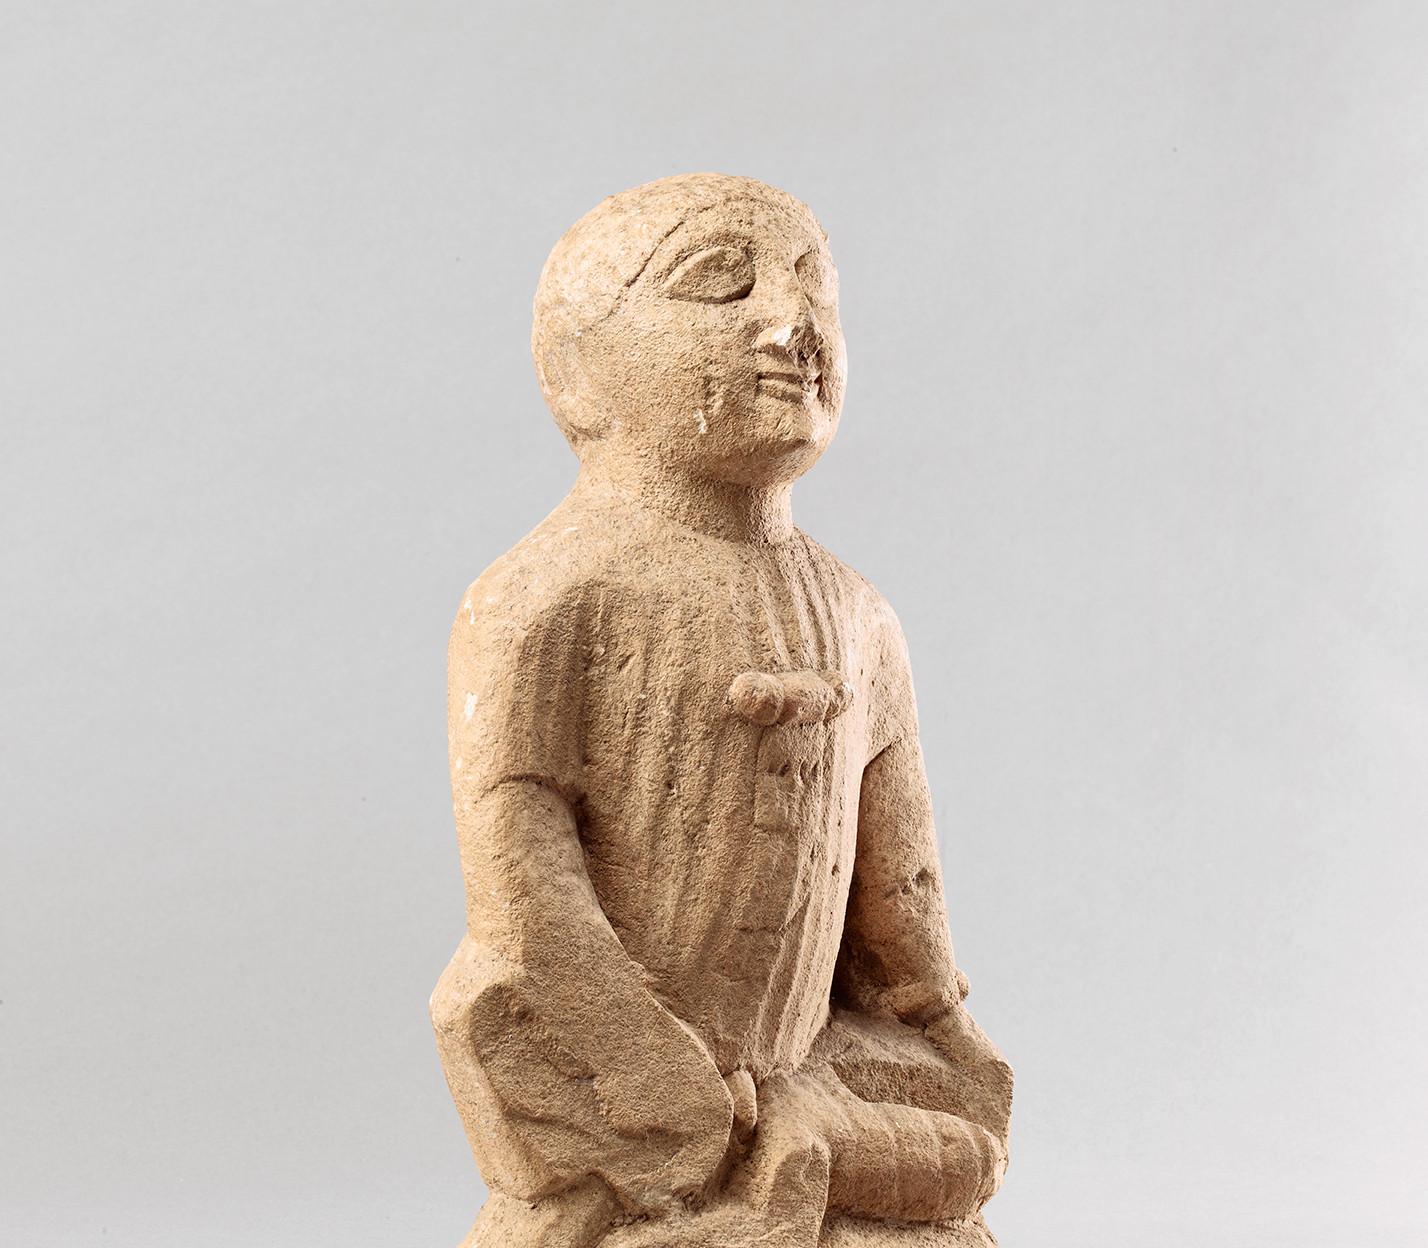 Statue de type "temple boy" - Chypre - Ve / IVe siècle avant notre ère